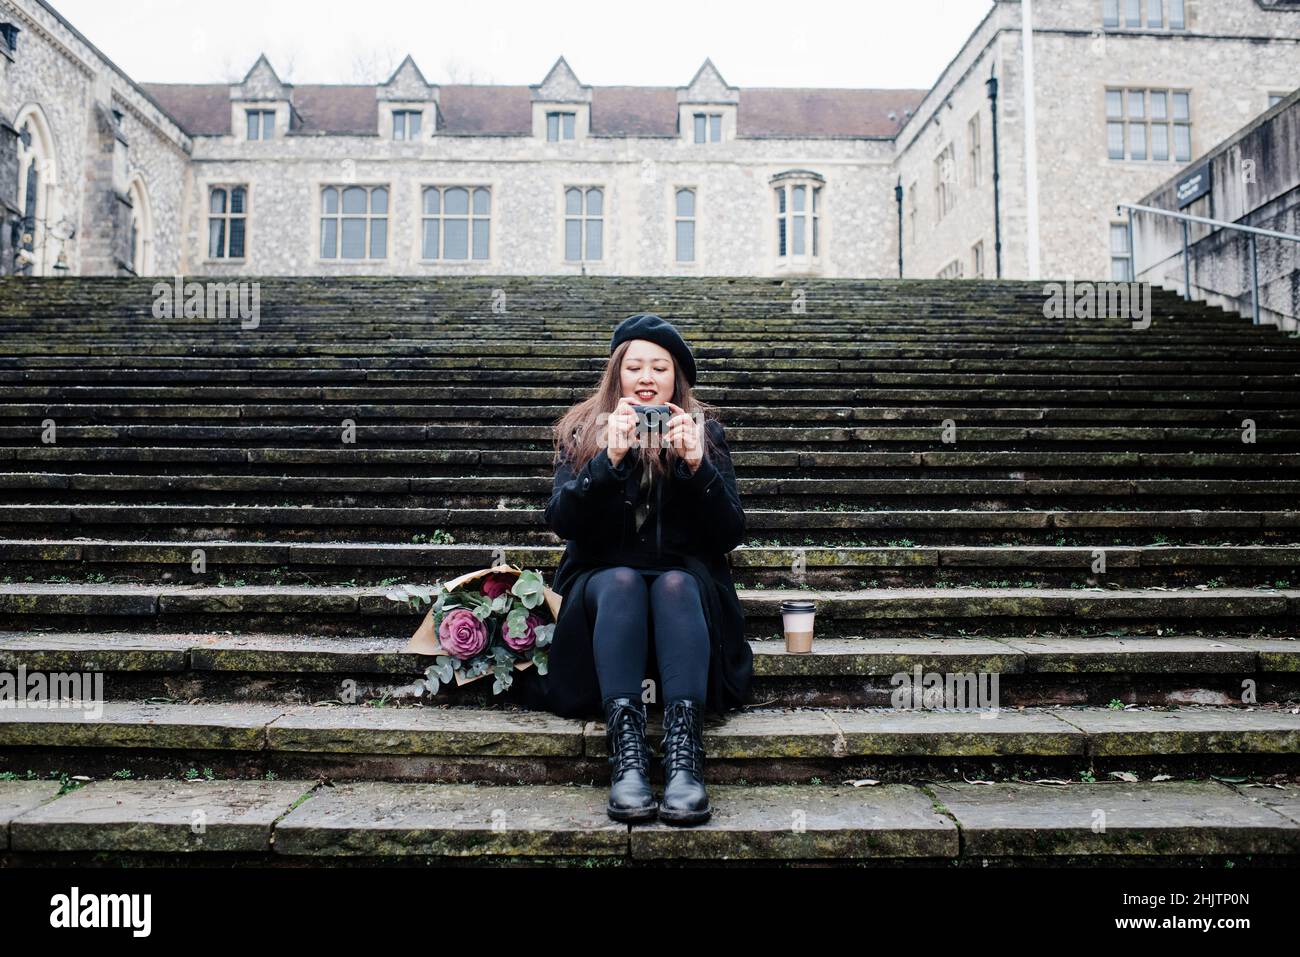 Una mujer asiática se sentó en los pasos que tomaron fotos en Winchester, Reino Unido Foto de stock